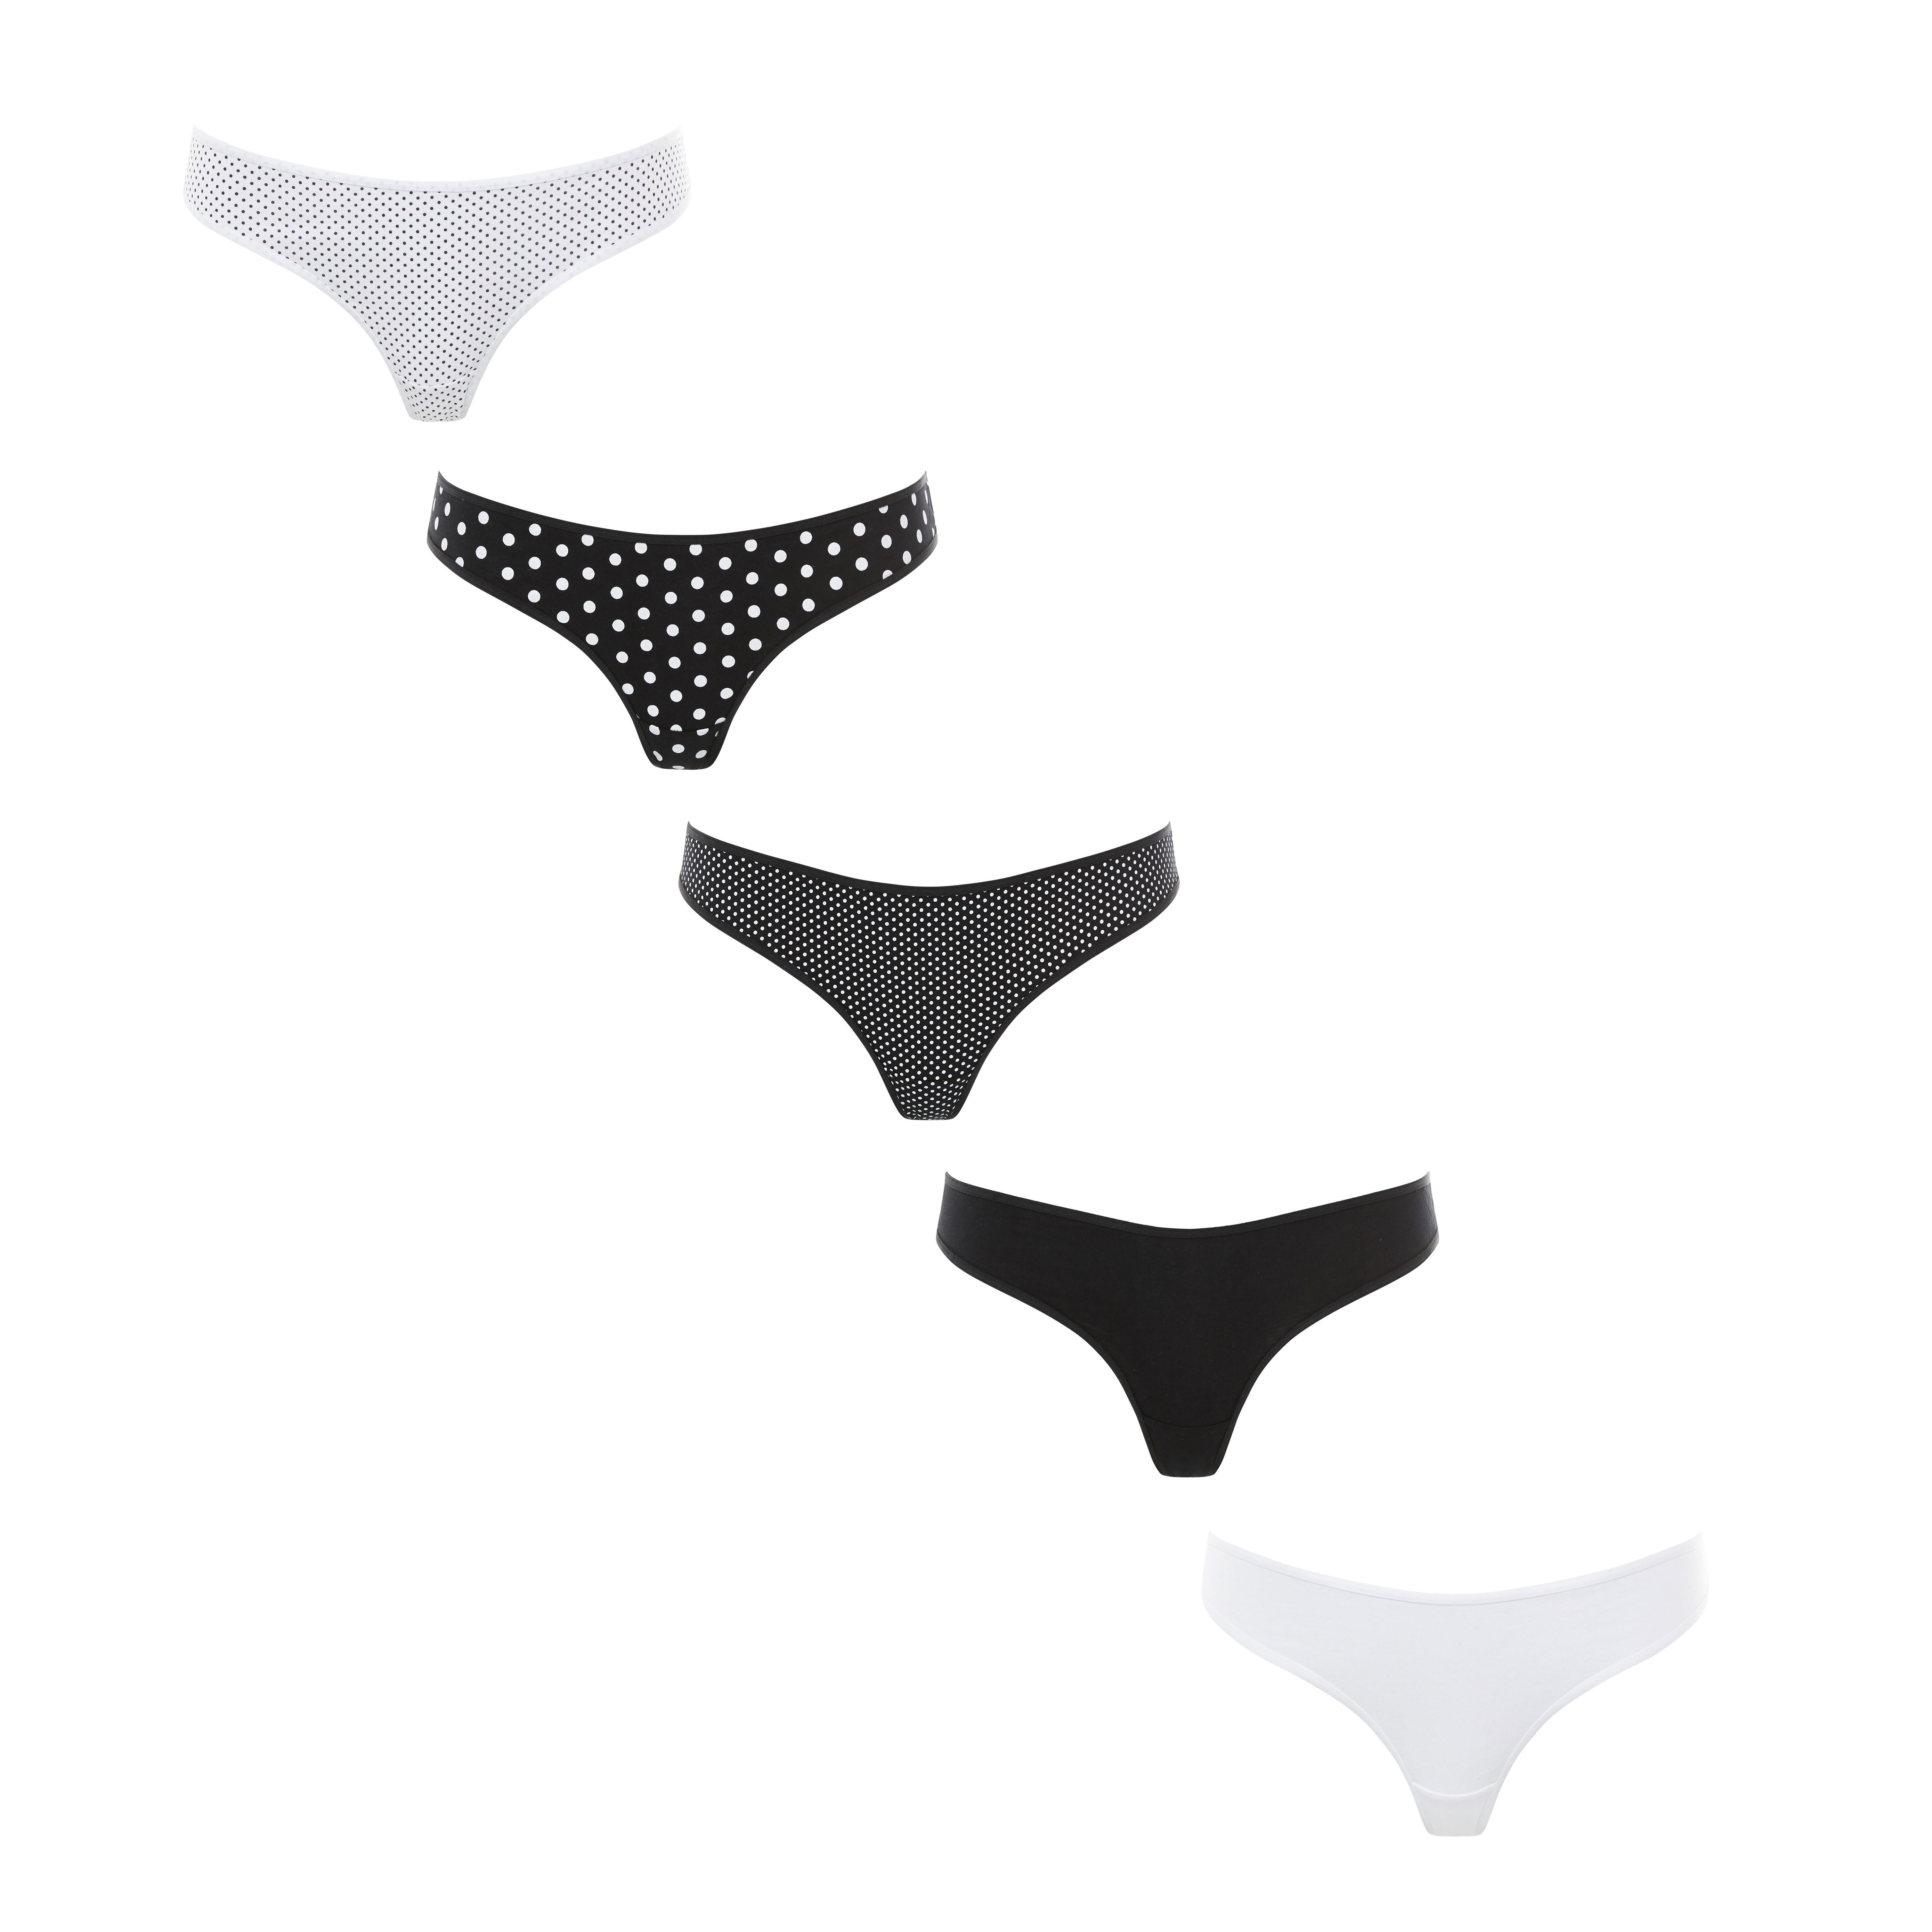 Ladies Thong Underwear Panties Women's 4 Pack Black & White Knickers Primark New 